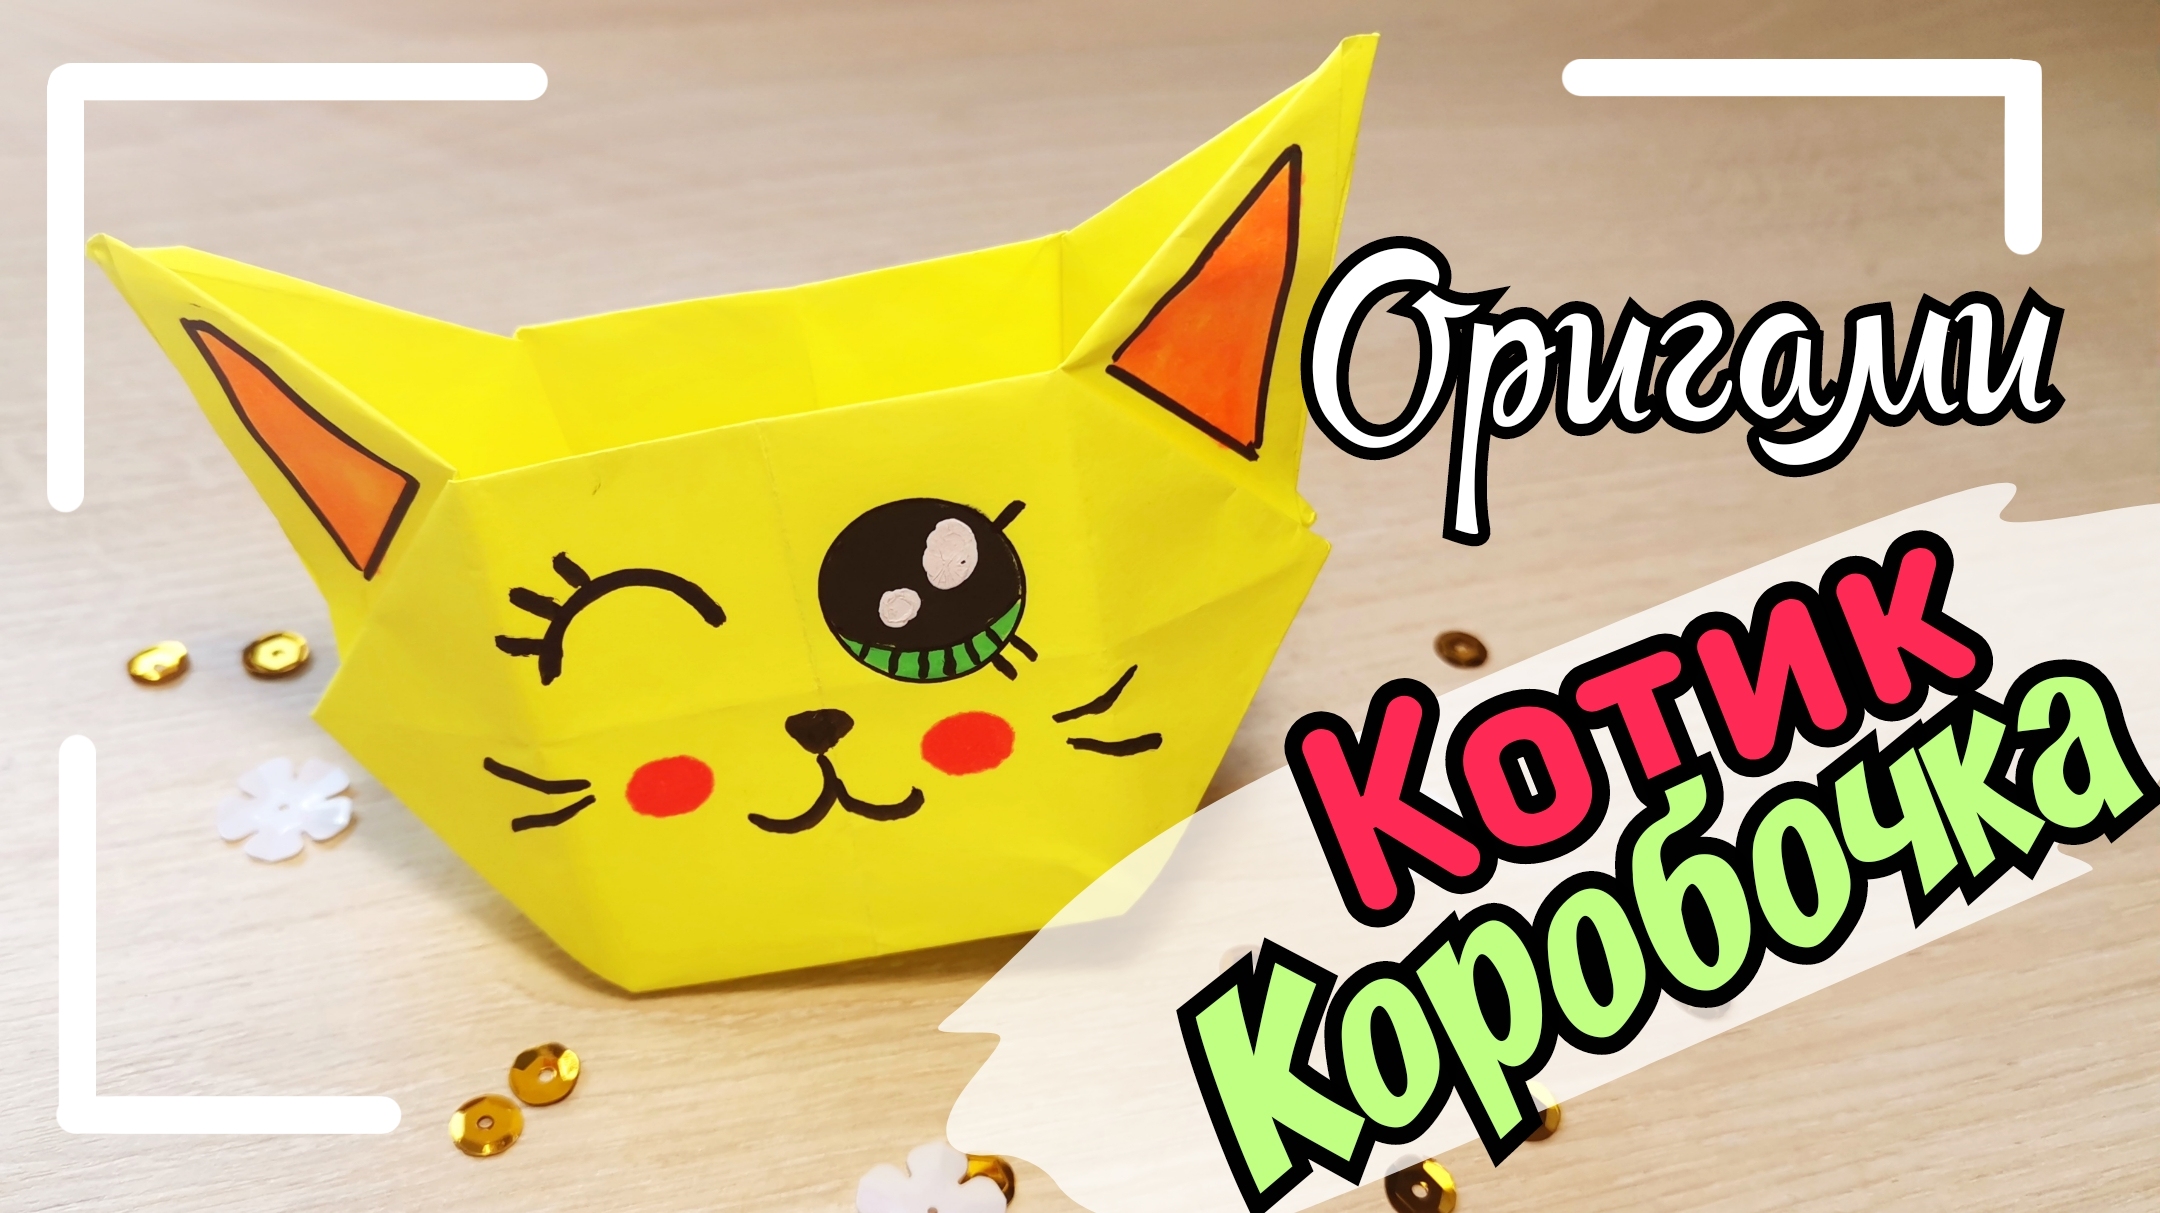 Оригами кошка/как сделать оригами коробочку /оригами коробочка/оригами кот  | Katy Laks | Дзен